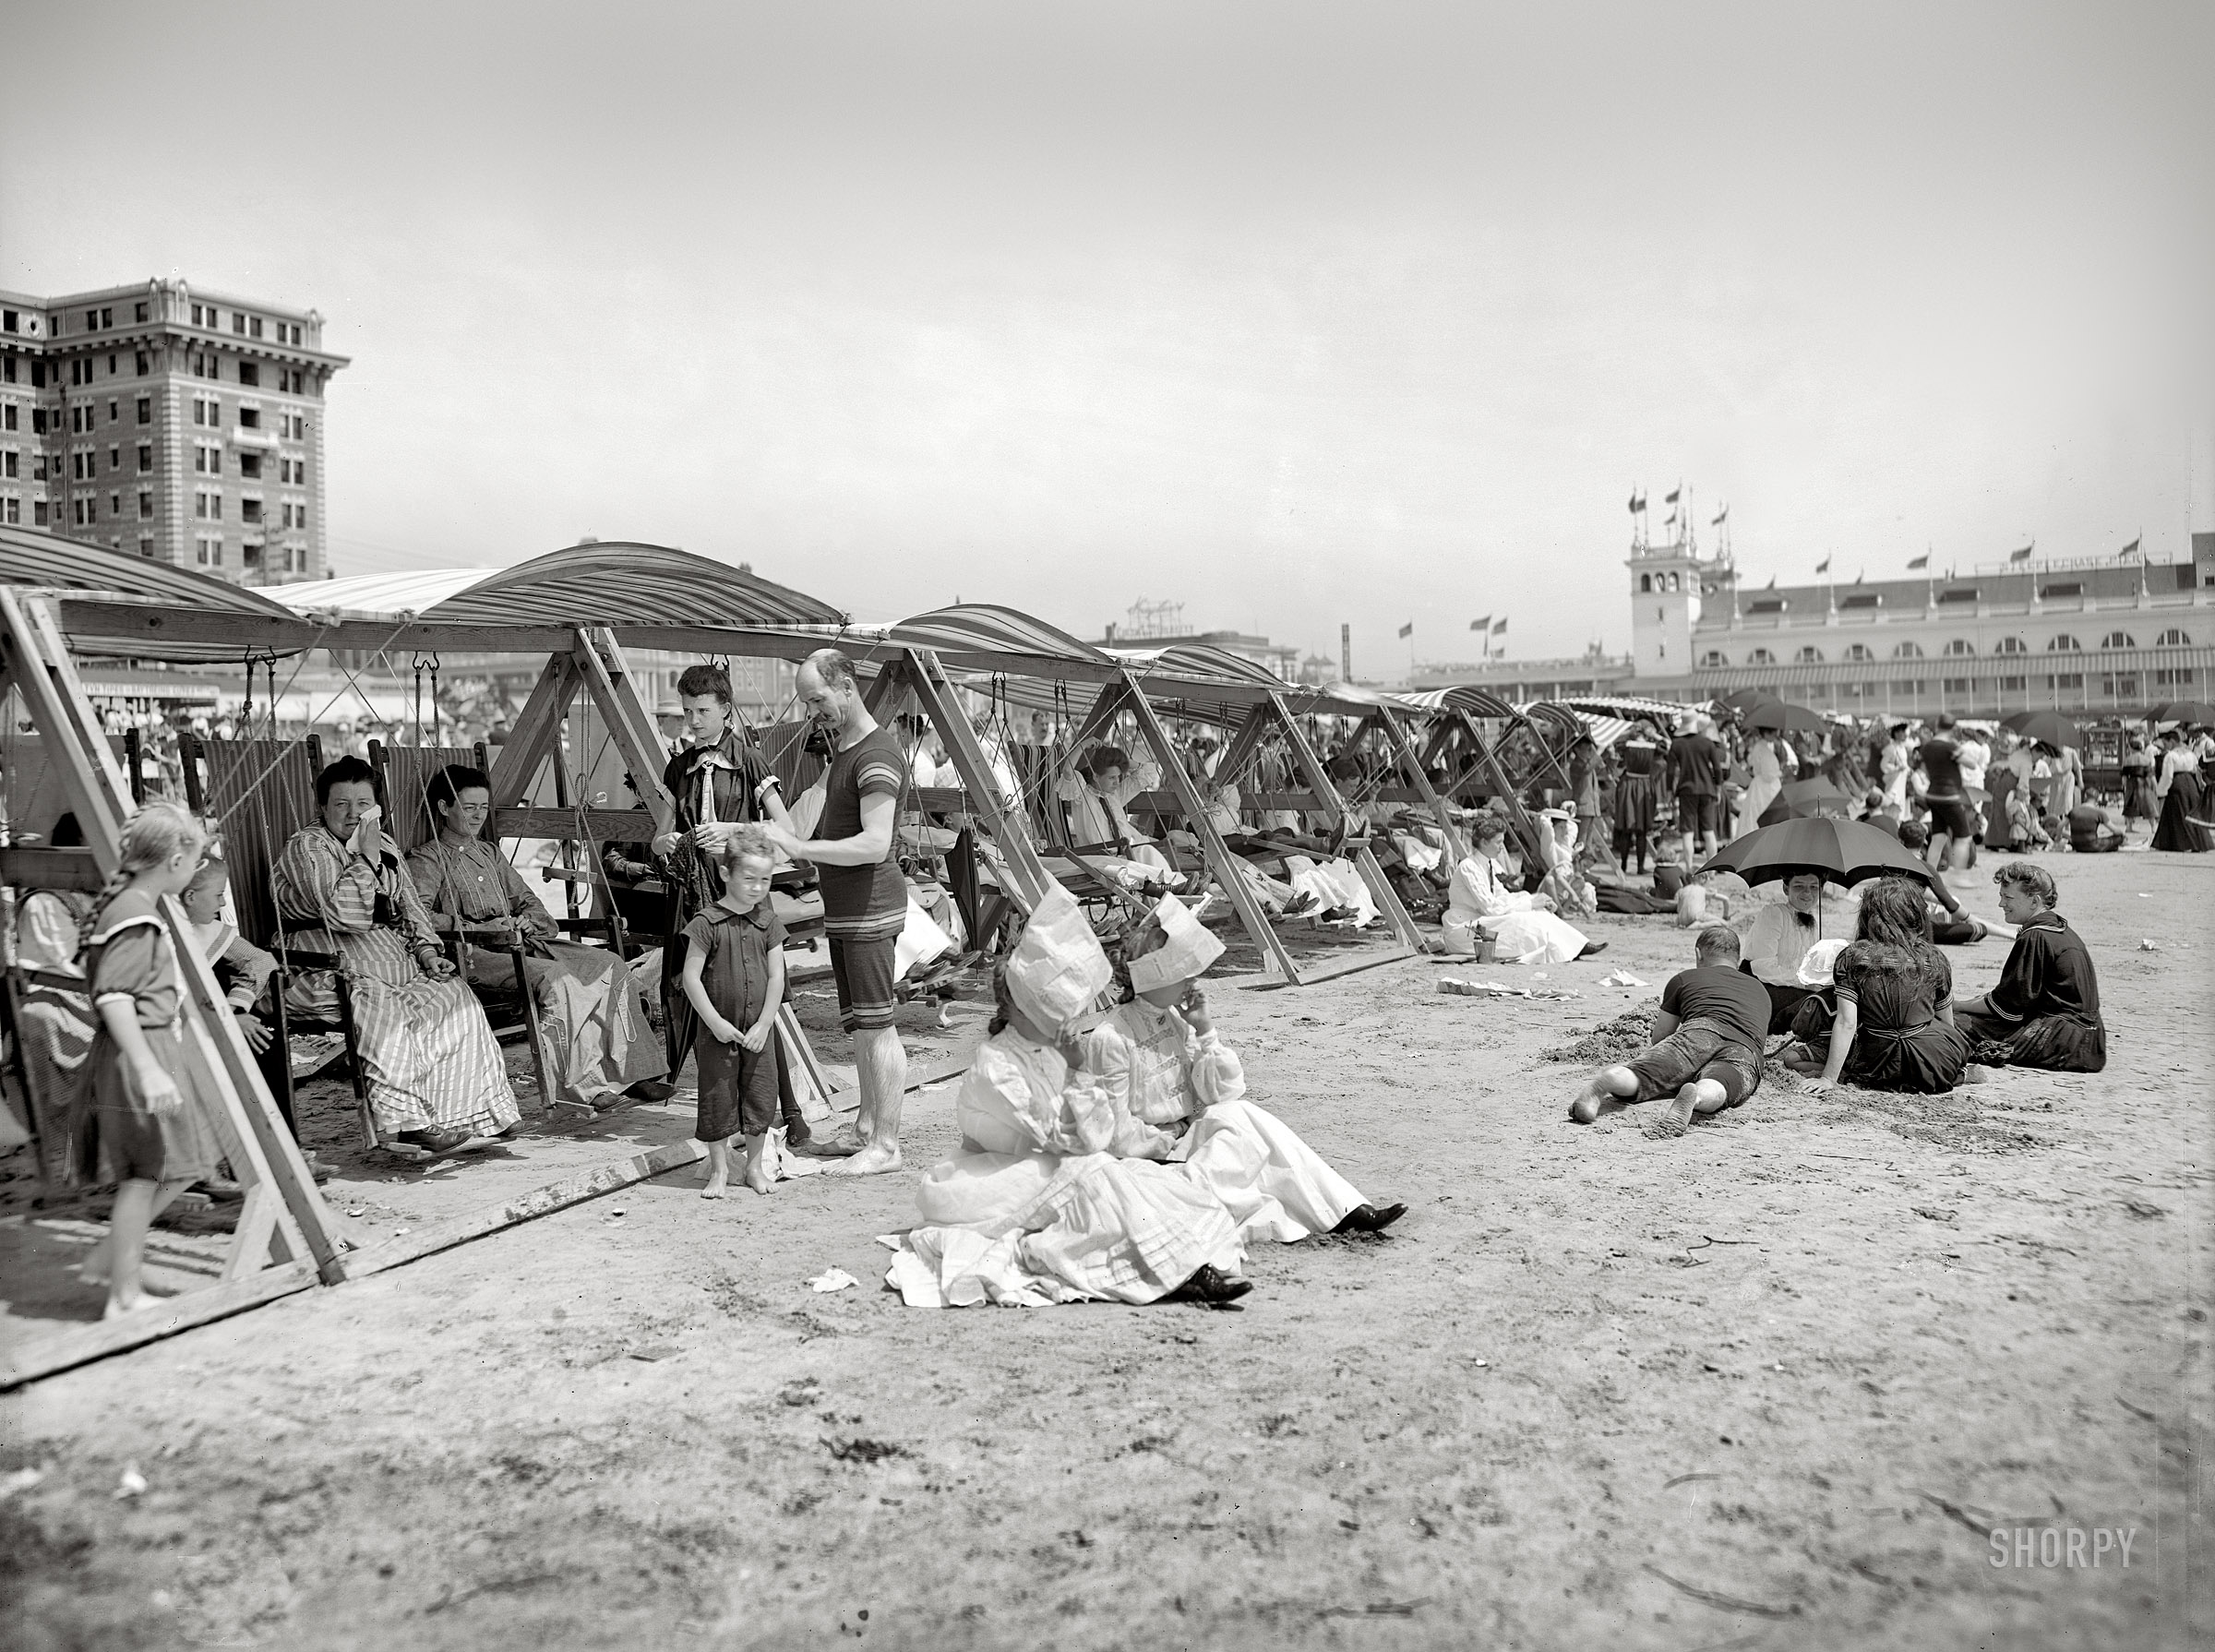 Видео 30 лет назад. Атлантик Сити 1920 год. Пляж Атлантик Сити 1920. Пляж в Америке начала 20 века. Пляжи 19 века.